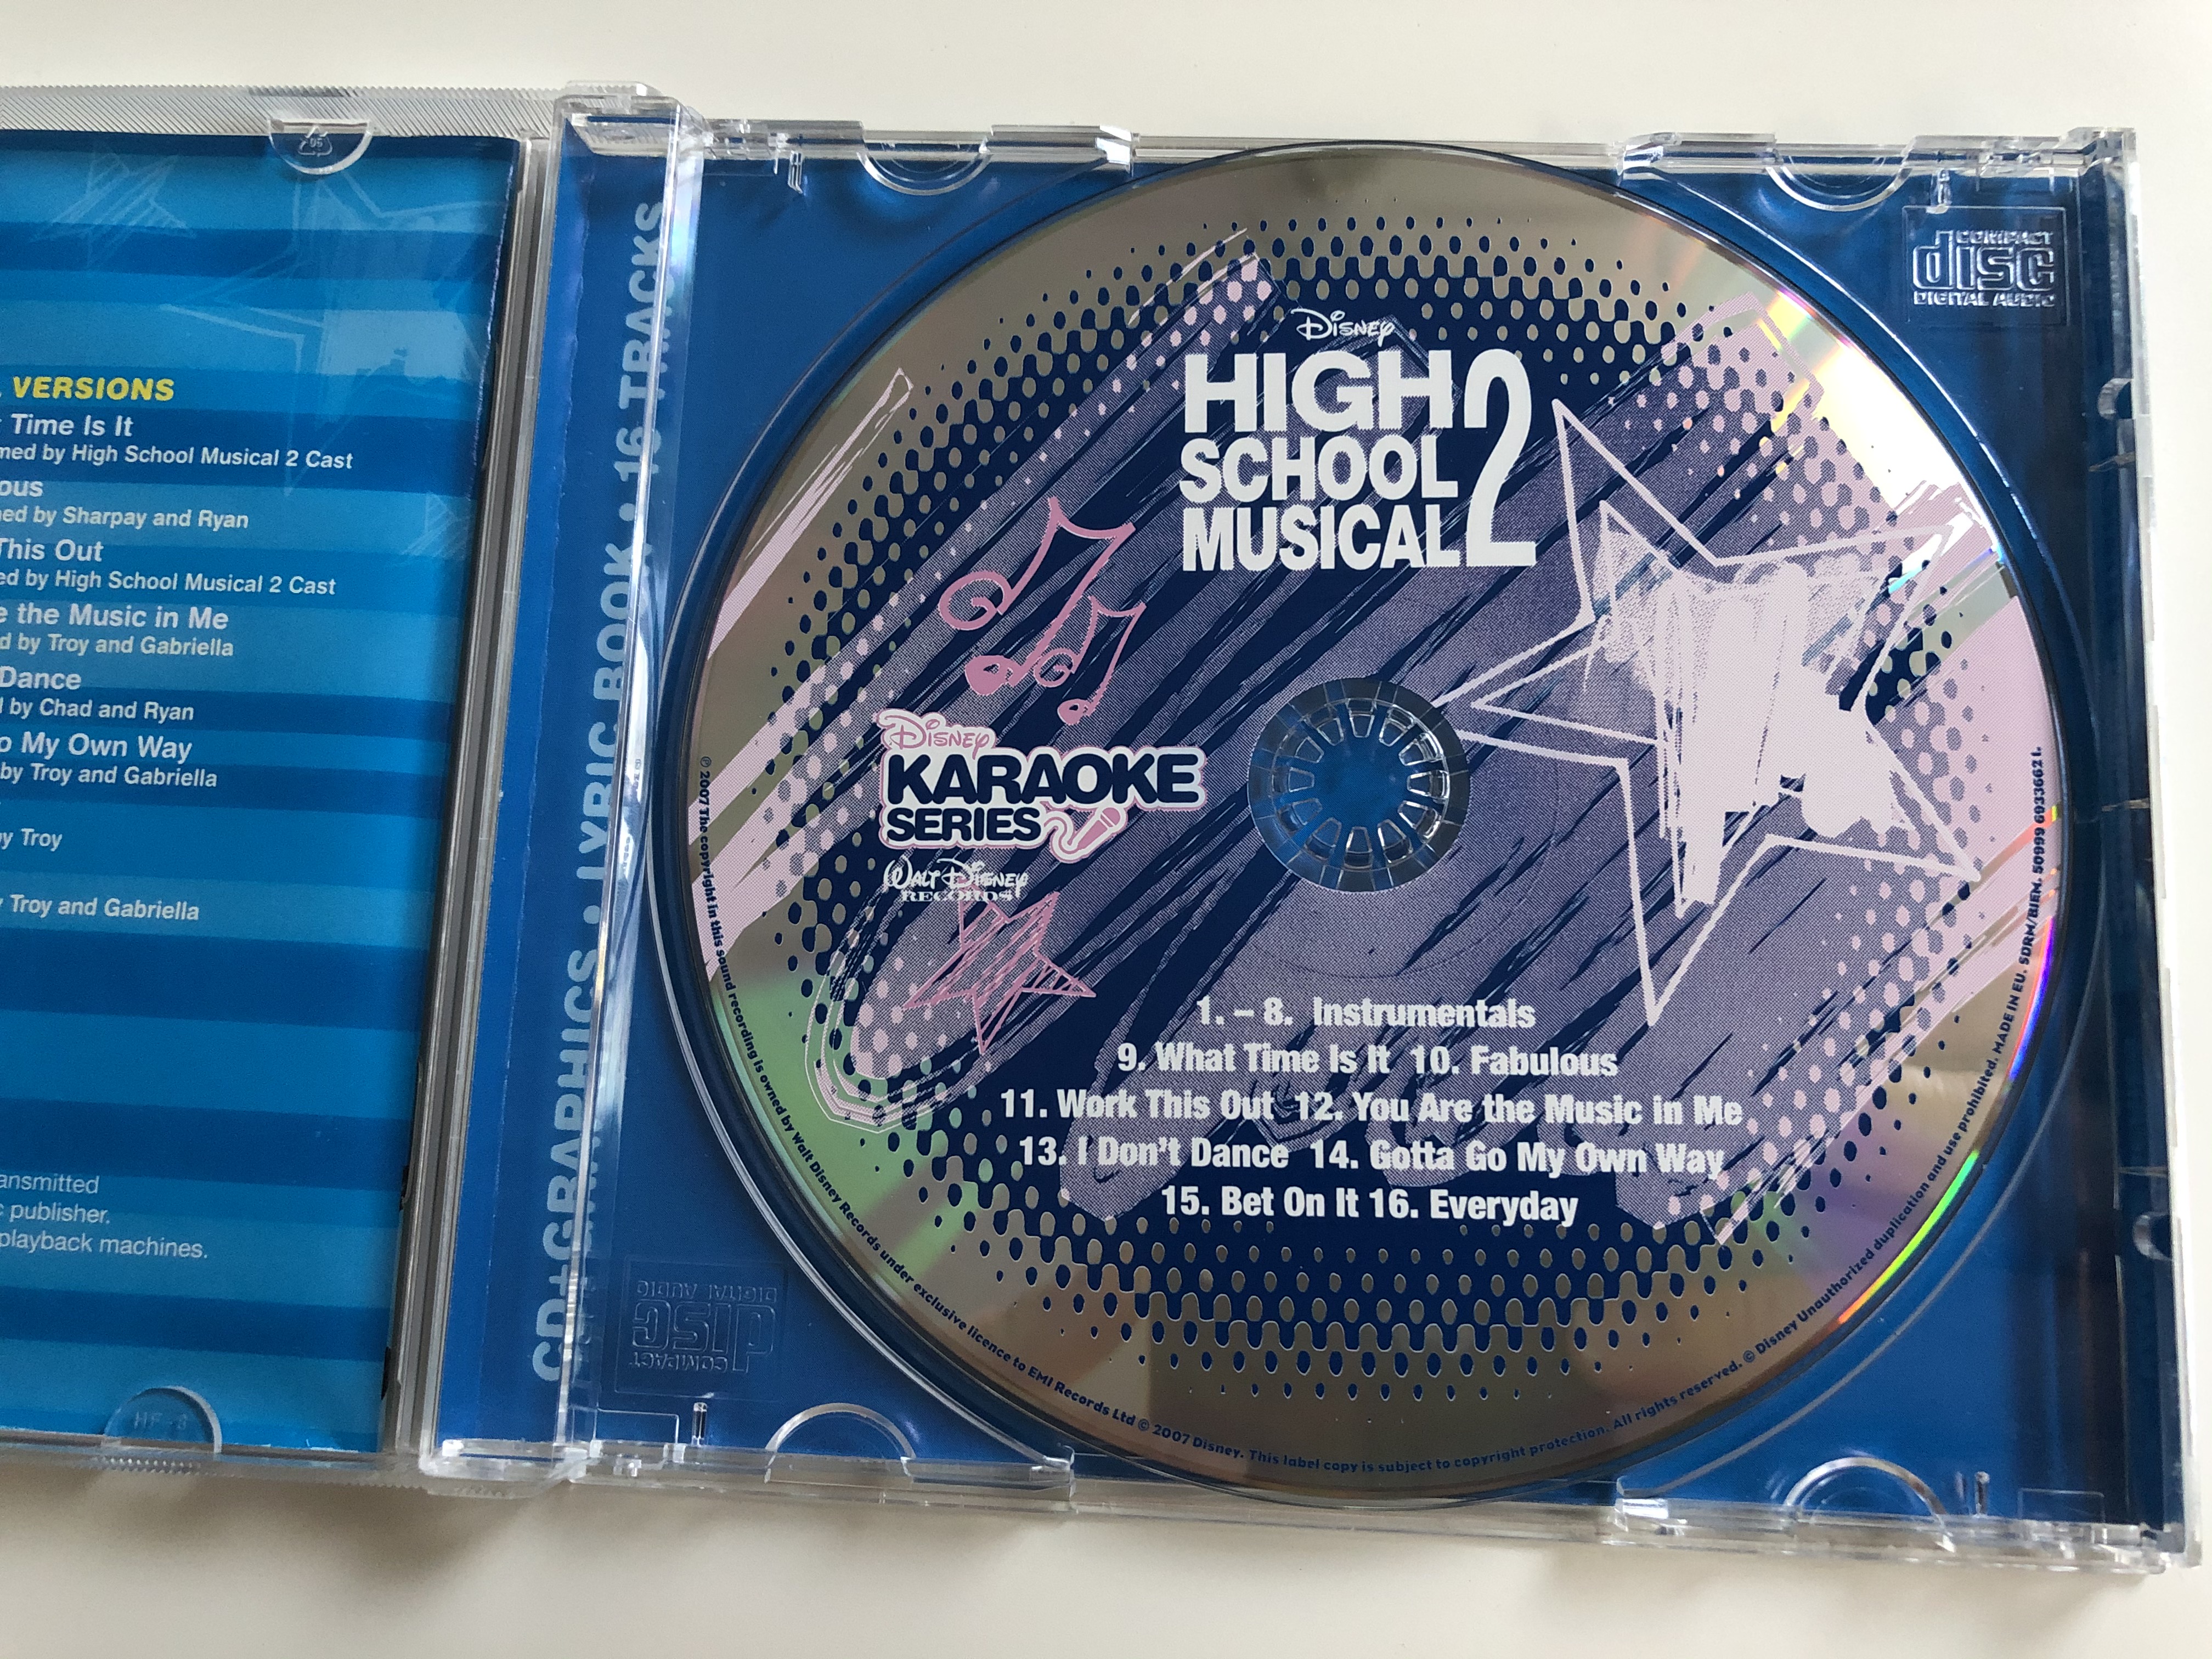 high-school-musical-2-disney-karaoke-series-walt-disney-records-audio-cd-2007-5099969336621-8-.jpg